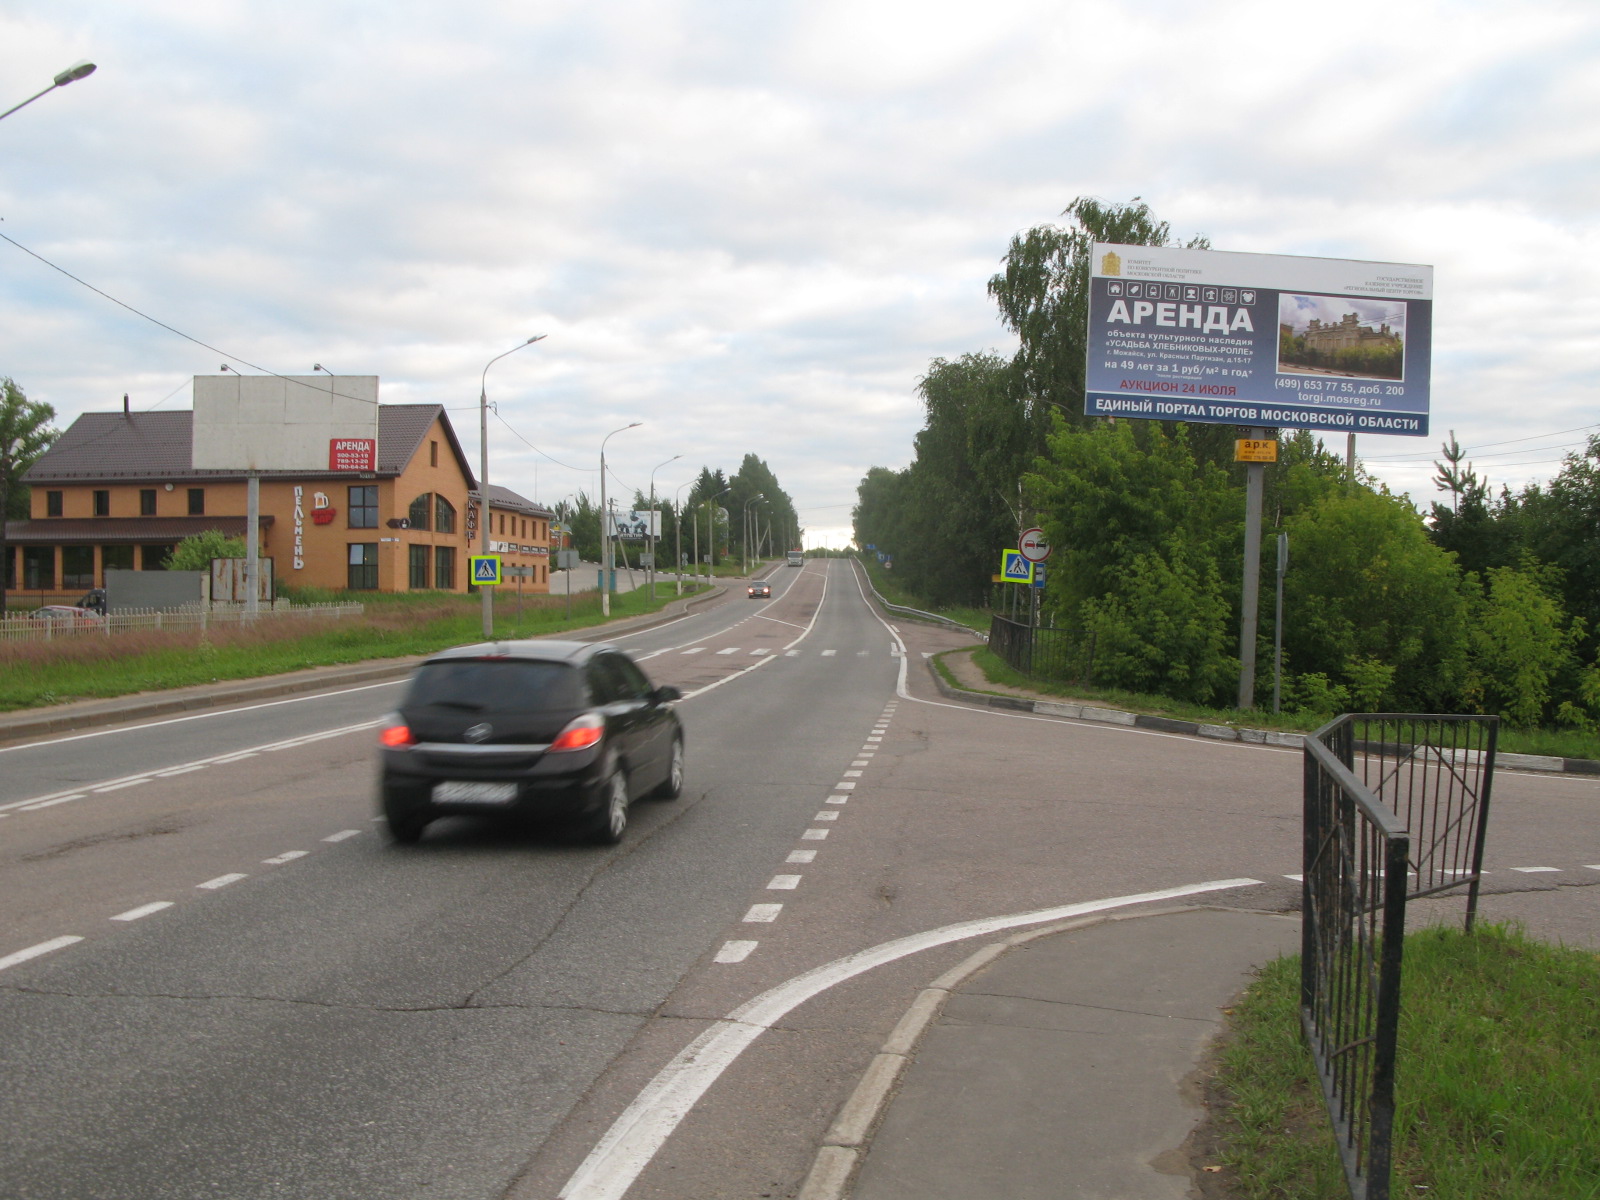 Пятницкое ш., 0,76 км после съезда с Ленинградского ш. (Красная ул.), справа, г.Солнечногорск